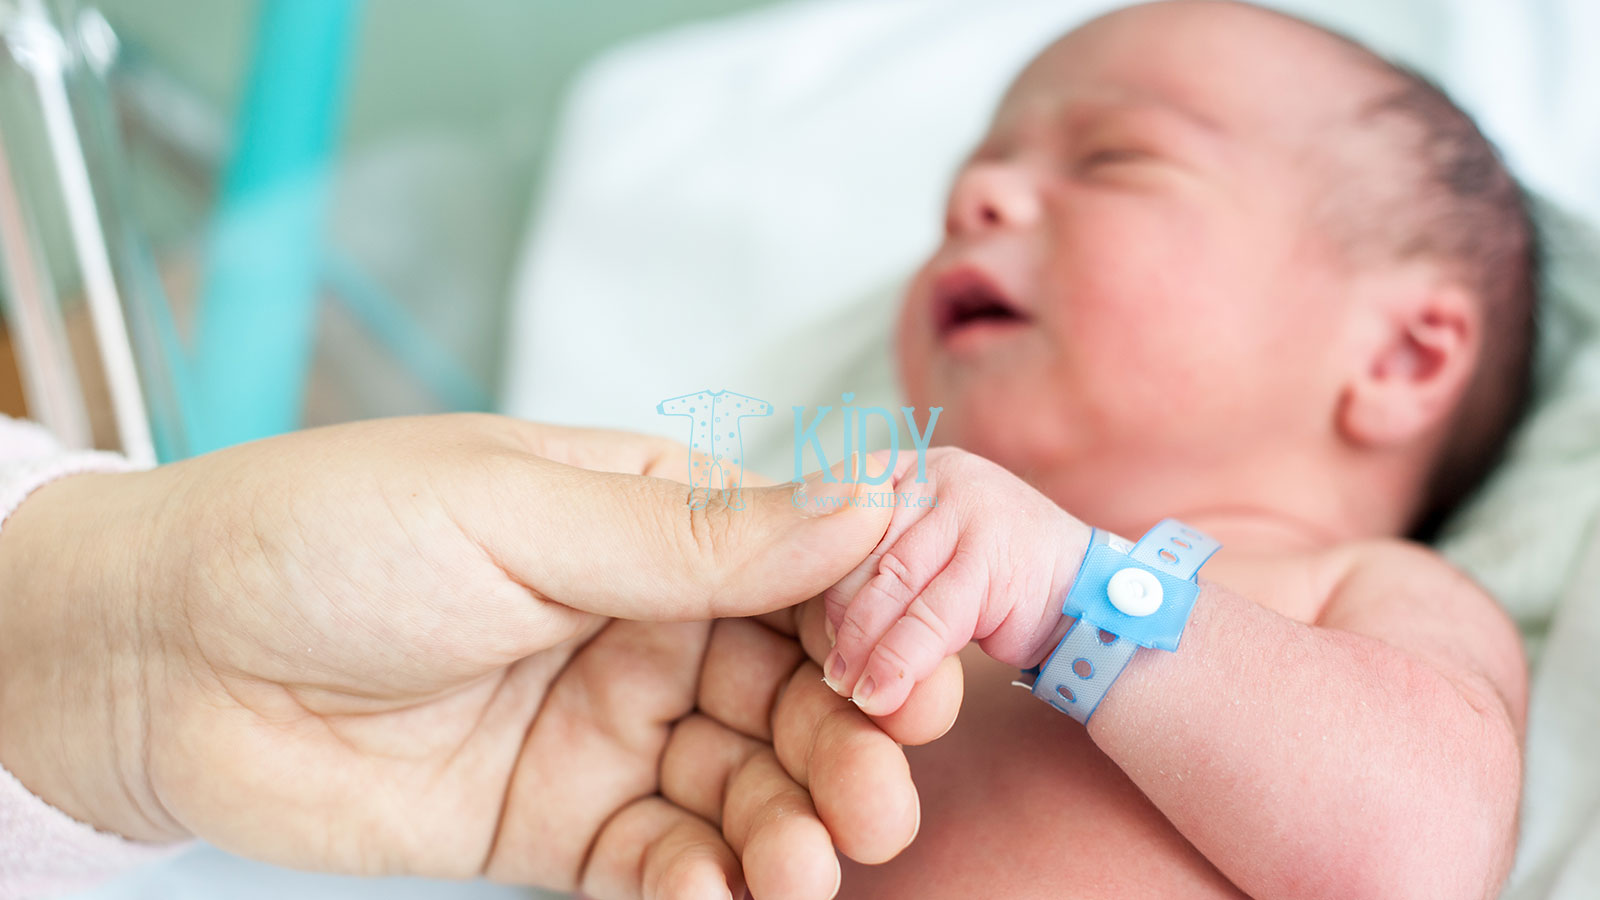 В конце первичного осмотра, новорождённому на запястье надевается именной браслет